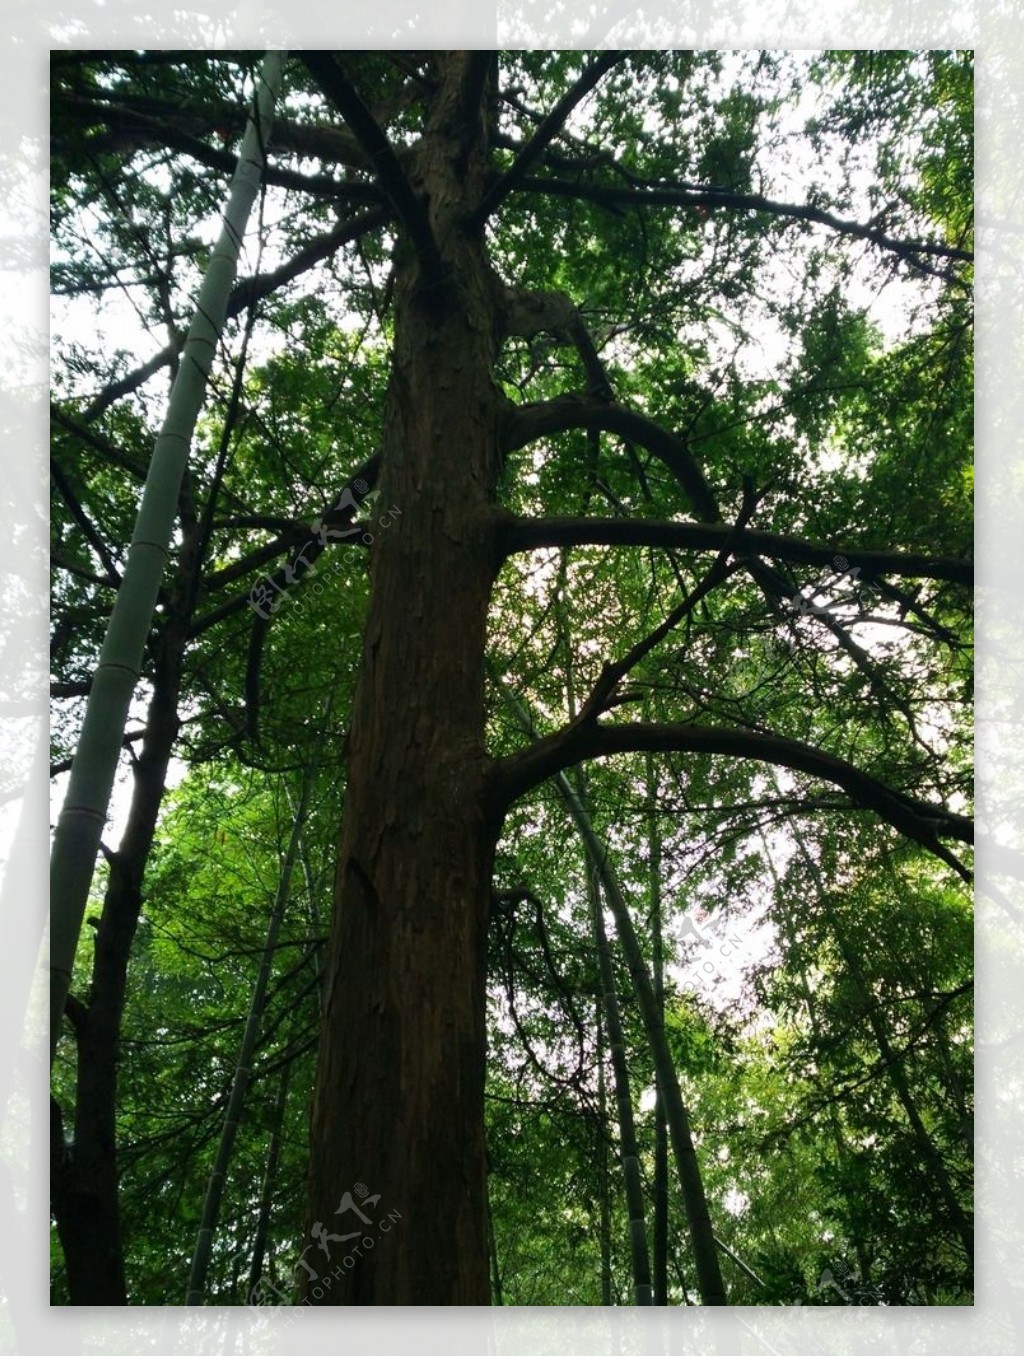 红豆杉:出名致富全靠“一棵树” - 三农致富经